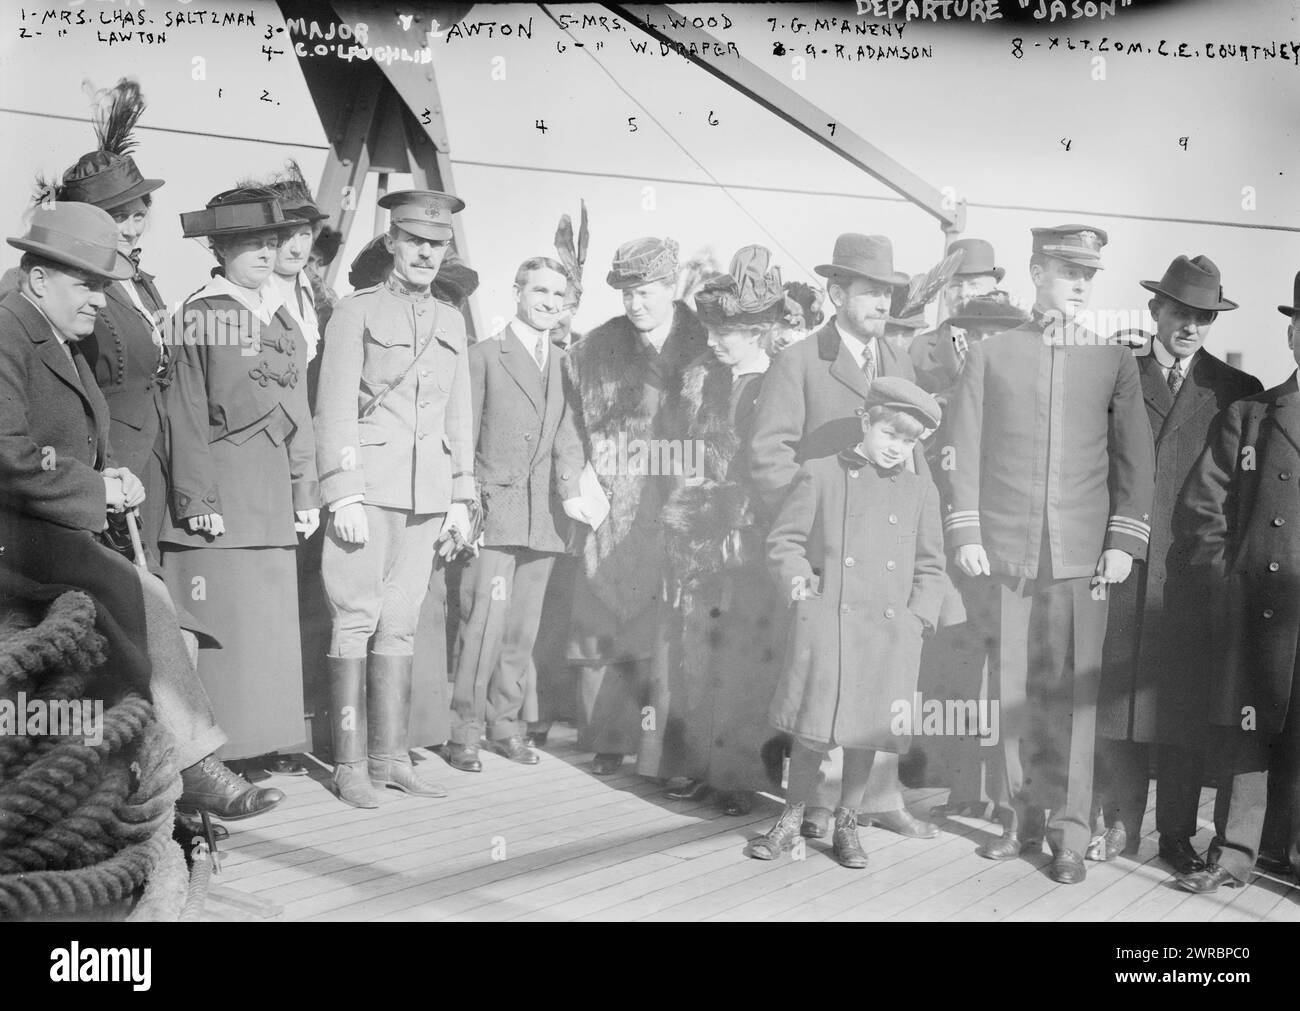 Abreise von JASON: Mrs. Chas. Saltzman, Mrs. Lawton, Major Lawton, C.O. Laughlin, Mrs. L. Wood, Frau W. Draper, G. McAneny, G.R. Adamson, Lt. C.E. Courtney, Foto zeigt Menschen auf den USA Jason, der am 14. November 1914 von New York aus segelte und etwa 6 Millionen Geschenke für die Kinder Europas trug, die vom Ersten Weltkrieg betroffen waren Zu den dargestellten Personen gehören: Frau Leonard Wood, Ehefrau des Befehlshabers der Armee des Ostens; Frau W.K. Draper (Helen Fidelia Draper), Leiter des New Yorker Kapitels des Roten Kreuzes; George McAneny Stockfoto